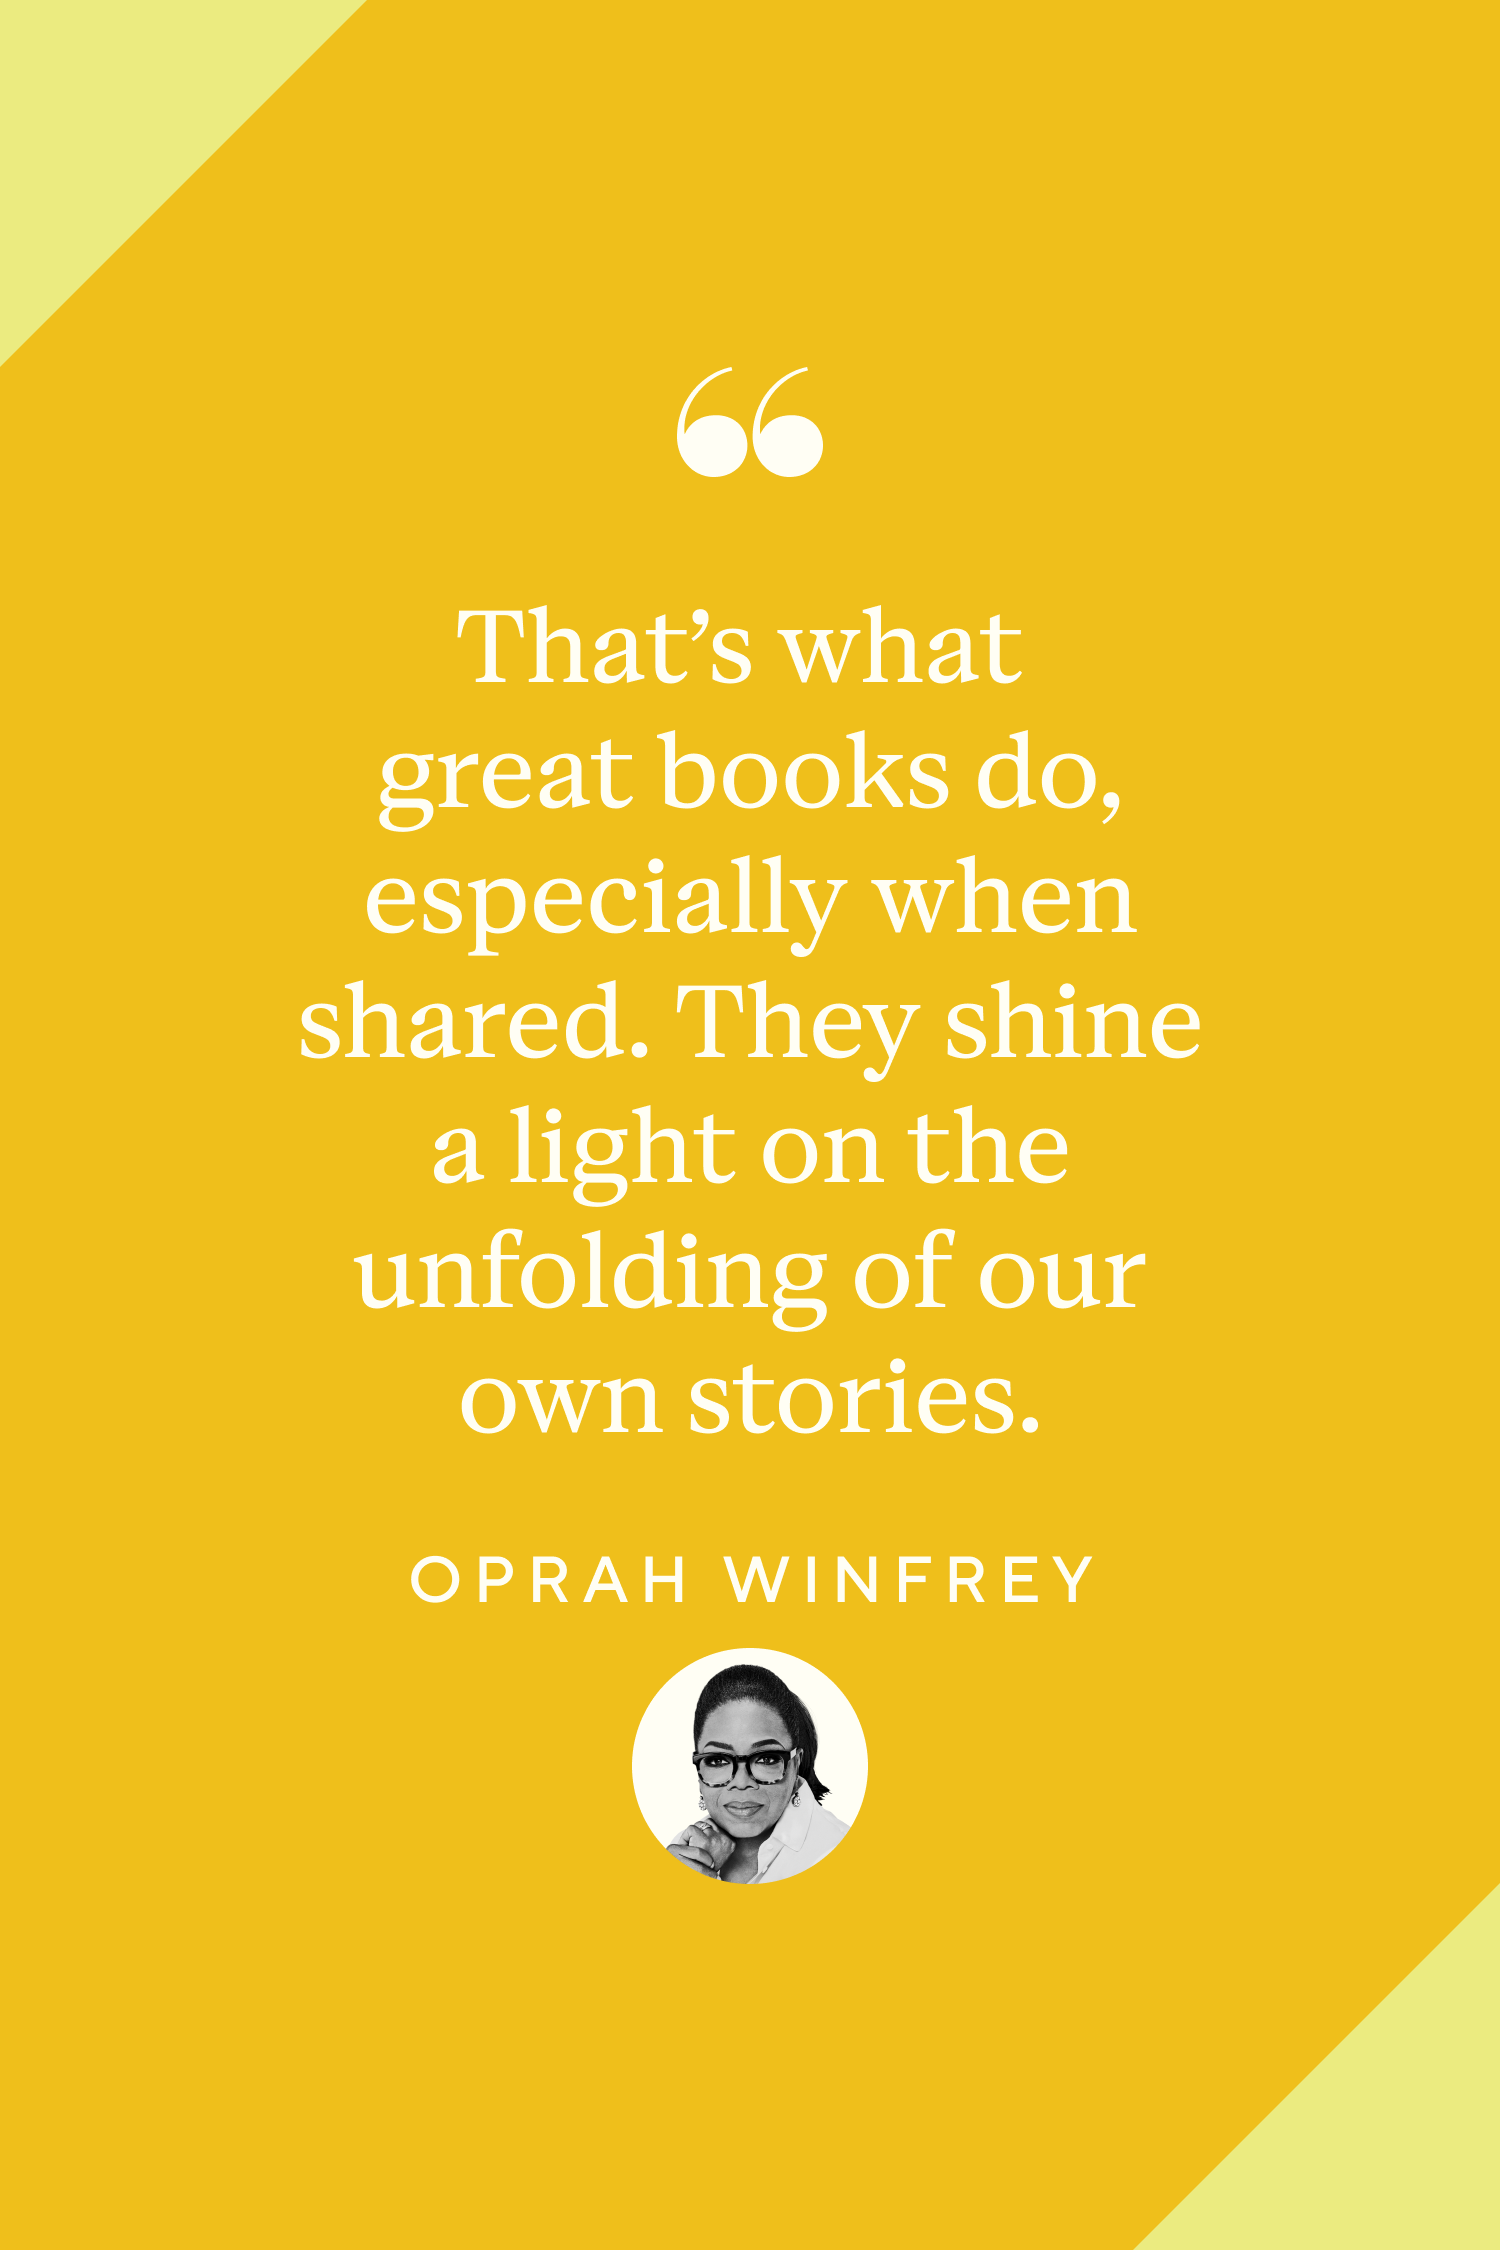 oprah winfrey quote surround yourself